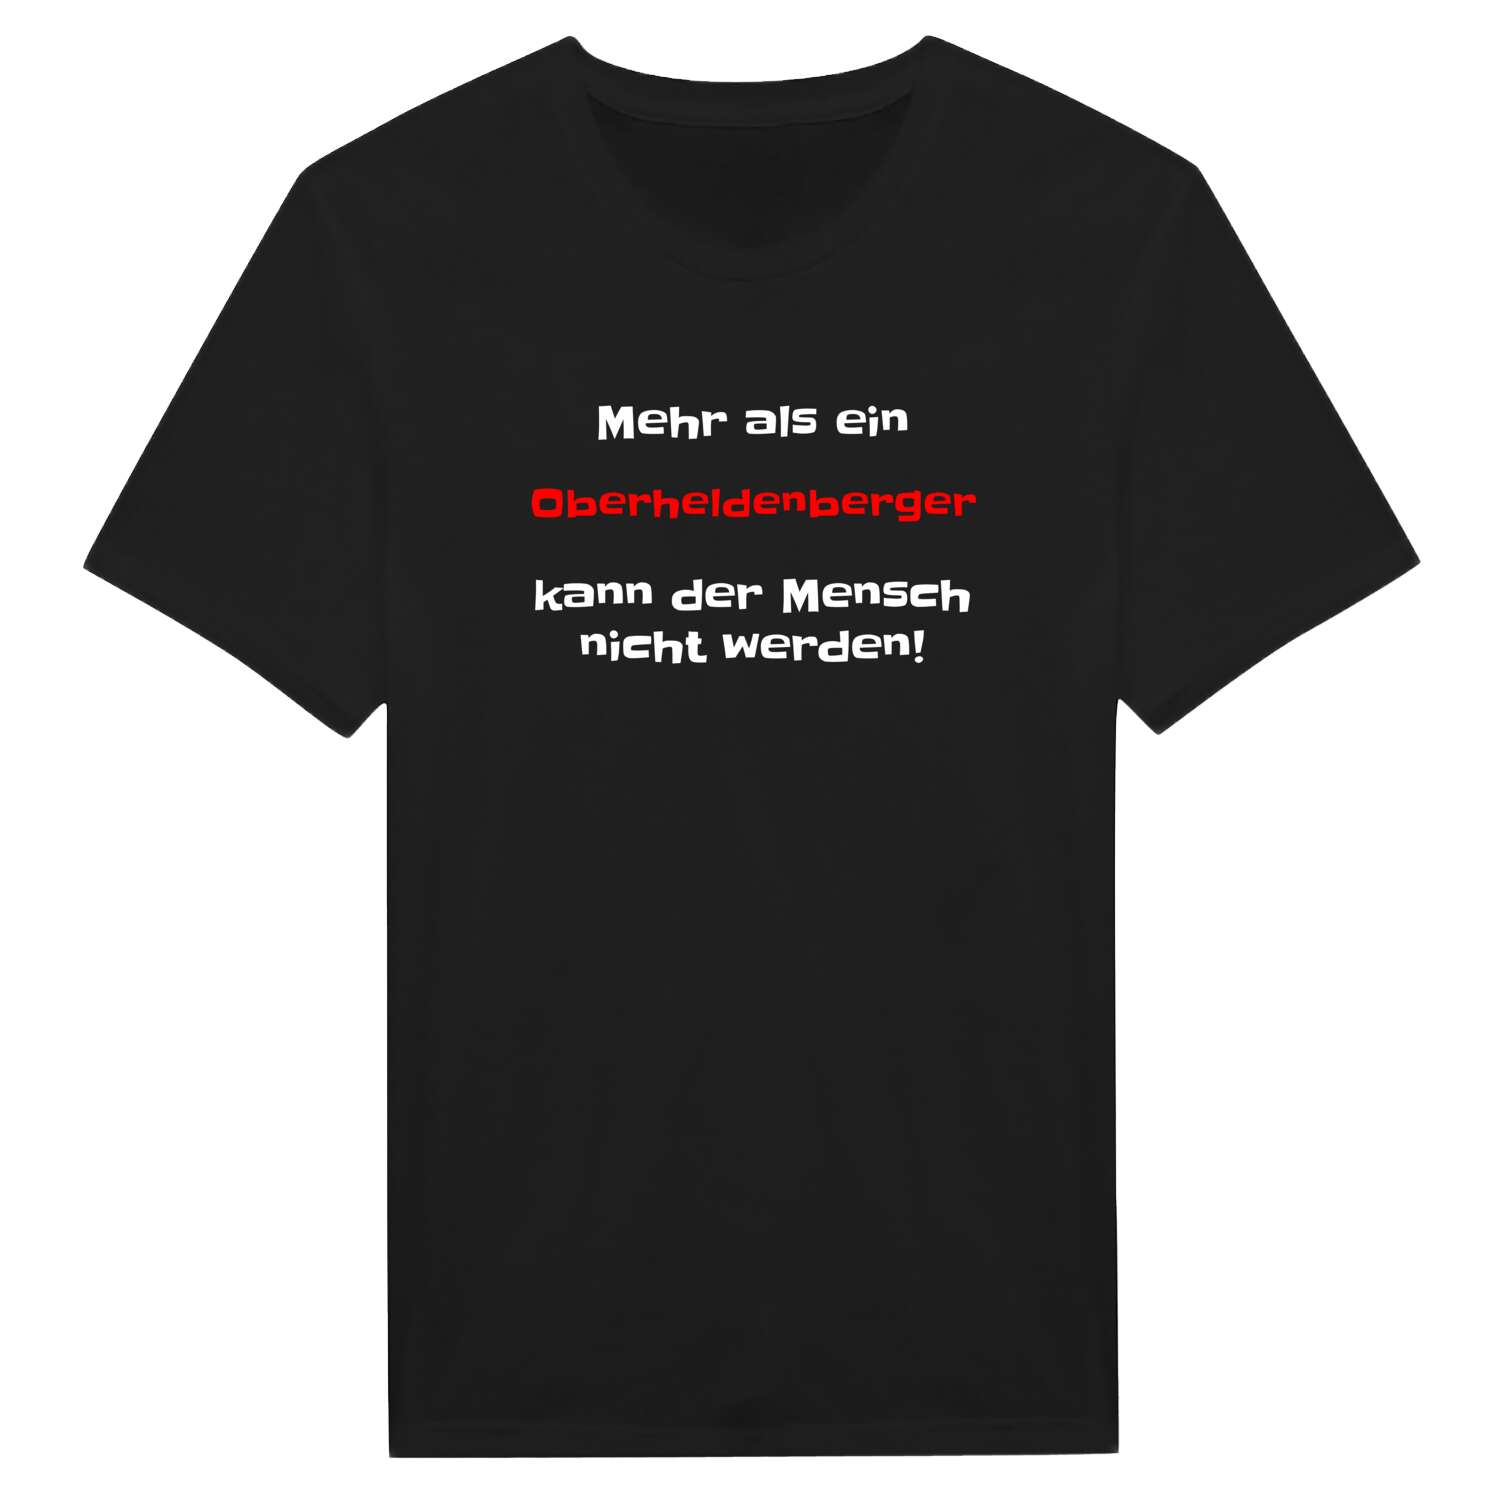 Oberheldenberg T-Shirt »Mehr als ein«